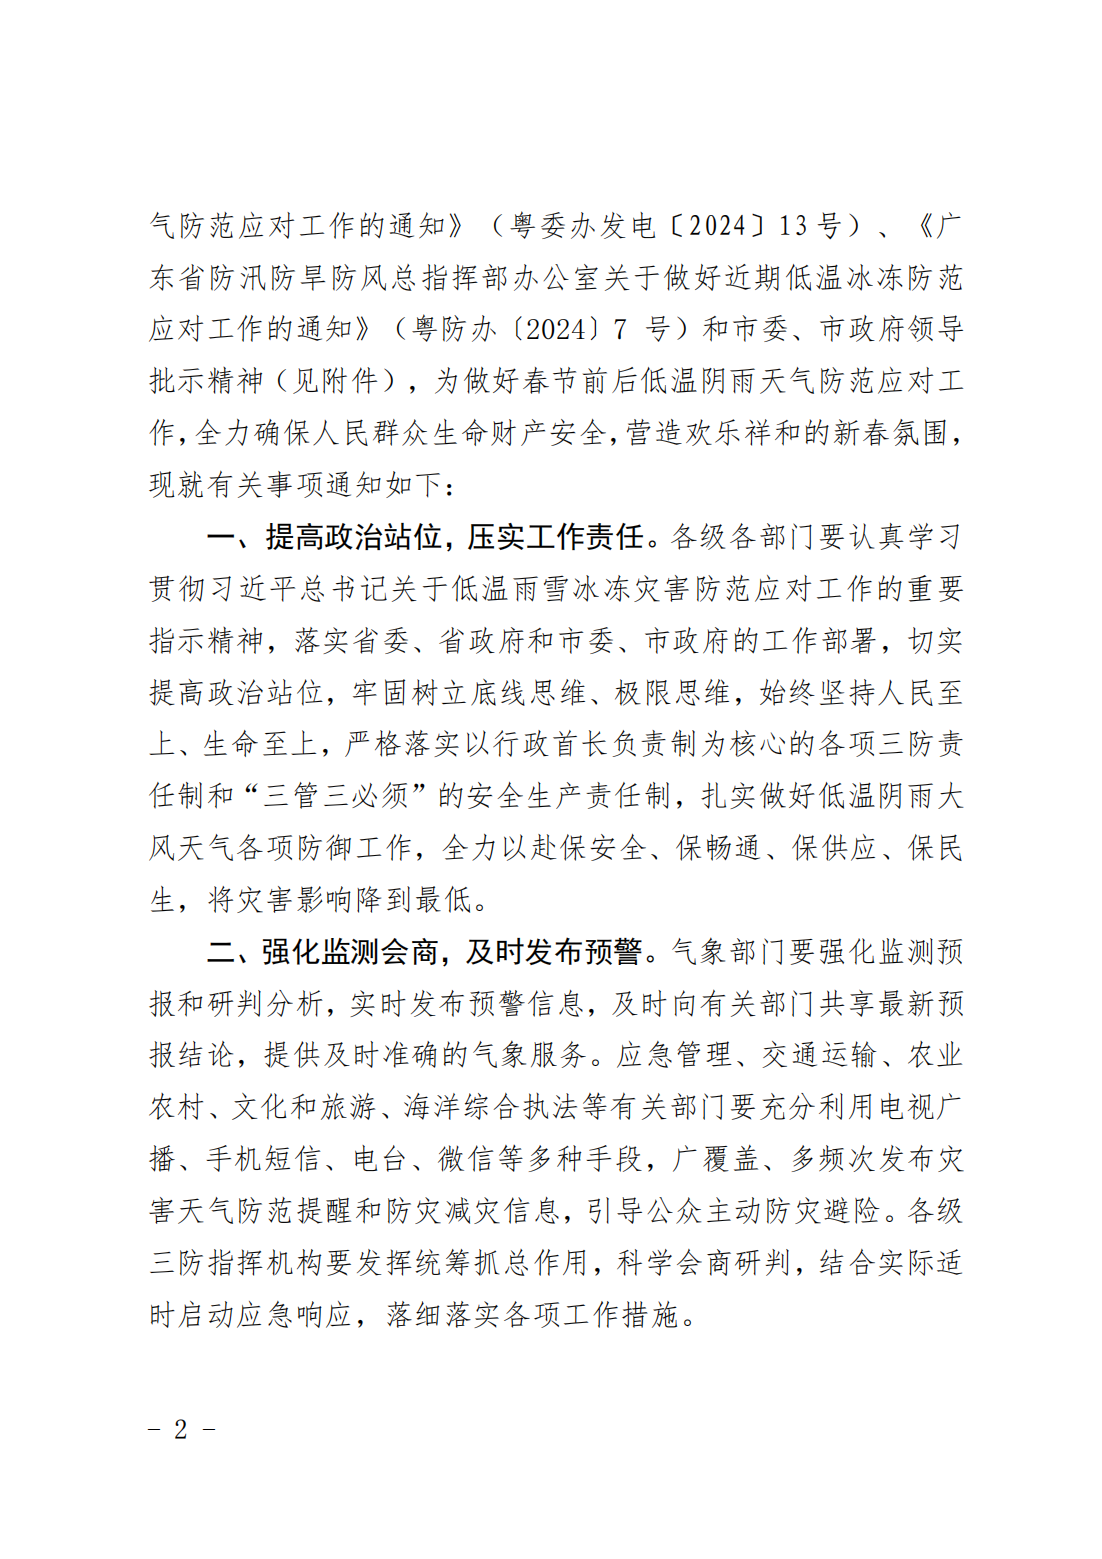 潮府防办5 关于做好春节前后低温阴雨天气防范应对工作的通知.pdf_01.png